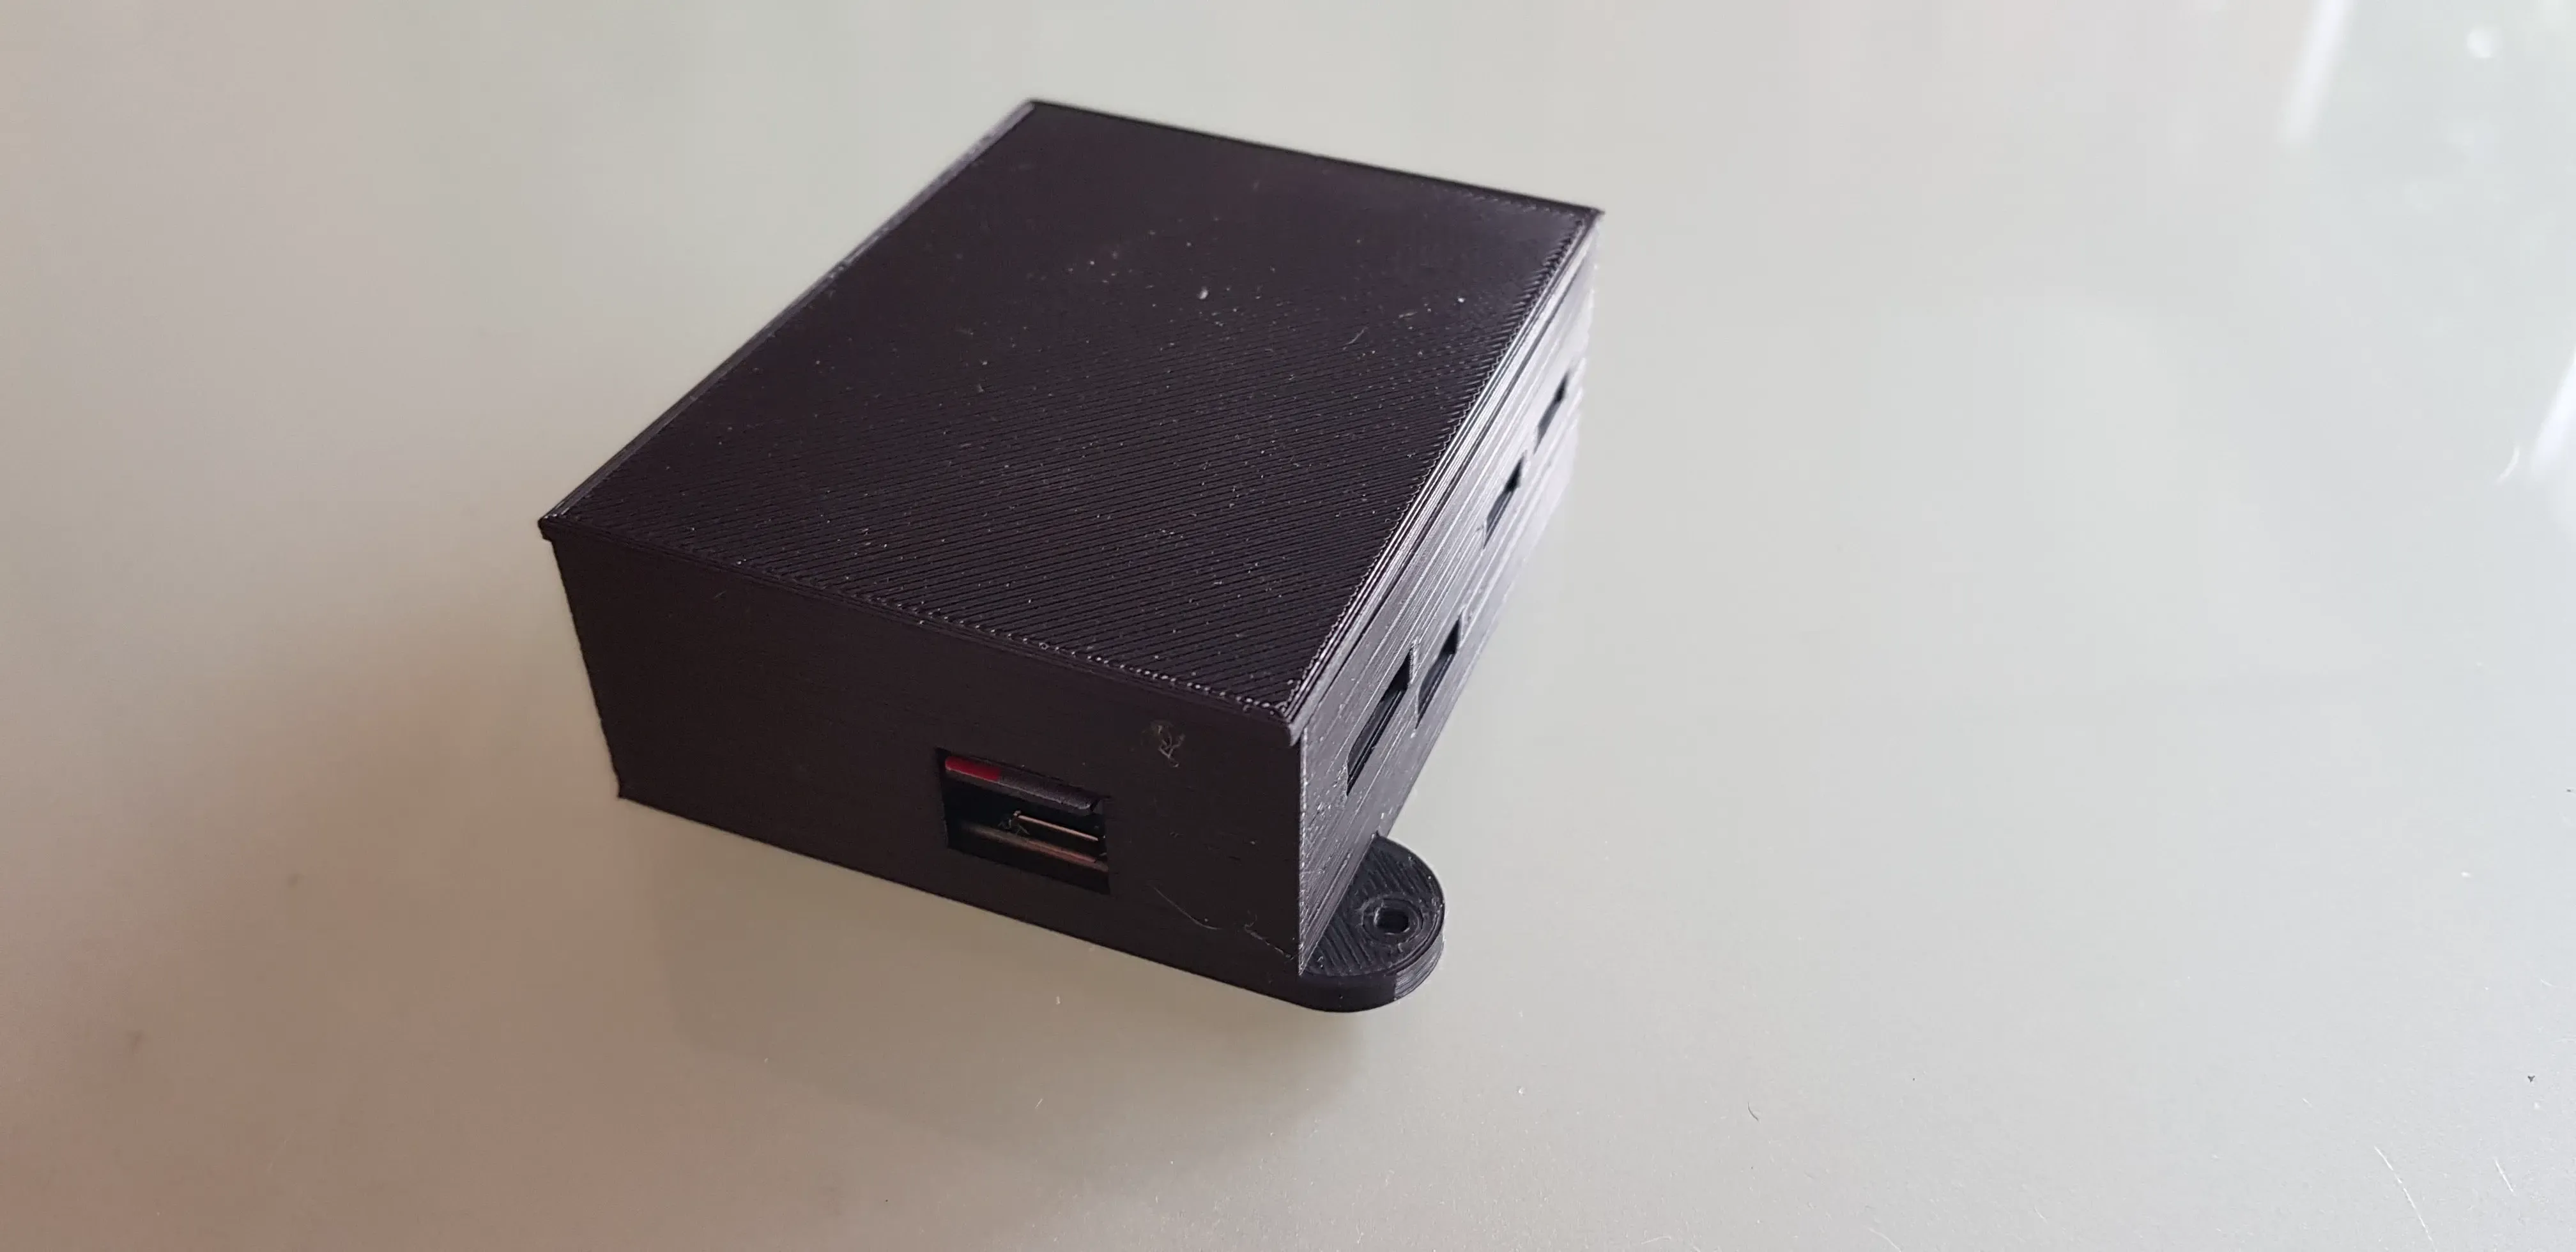 Case for Raspberry PI Zero W with Hub USB-Ethernet